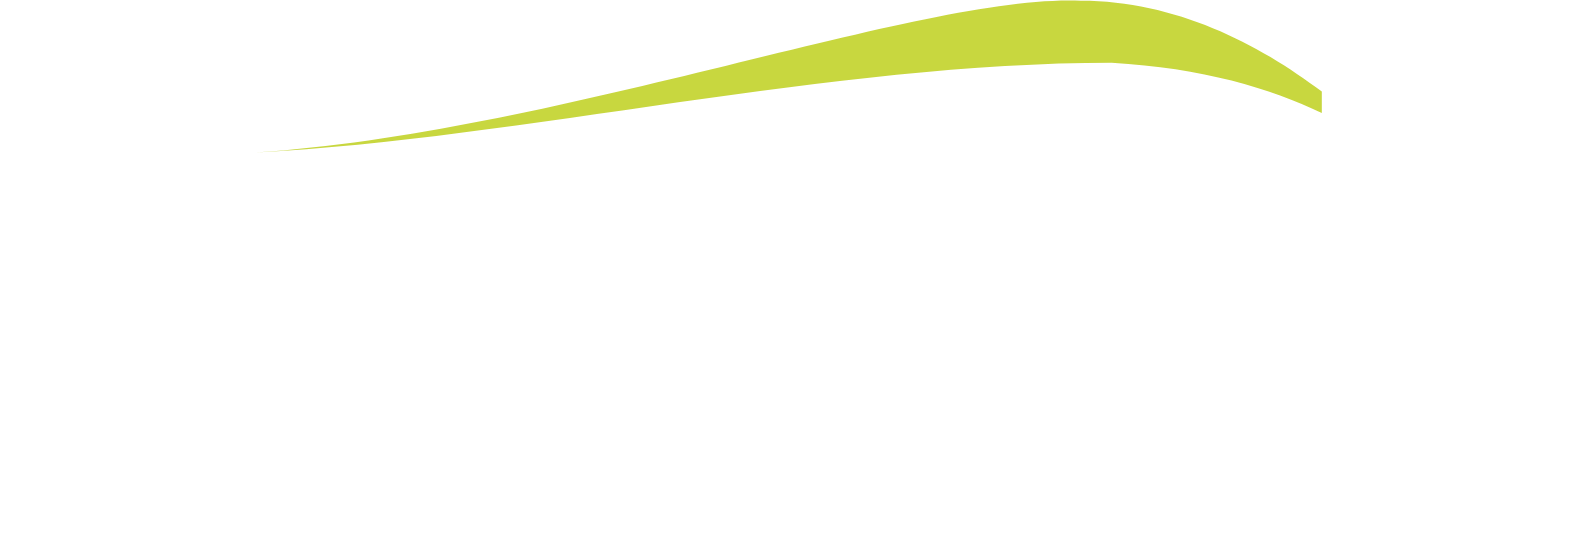 Northeast Bank logo large for dark backgrounds (transparent PNG)